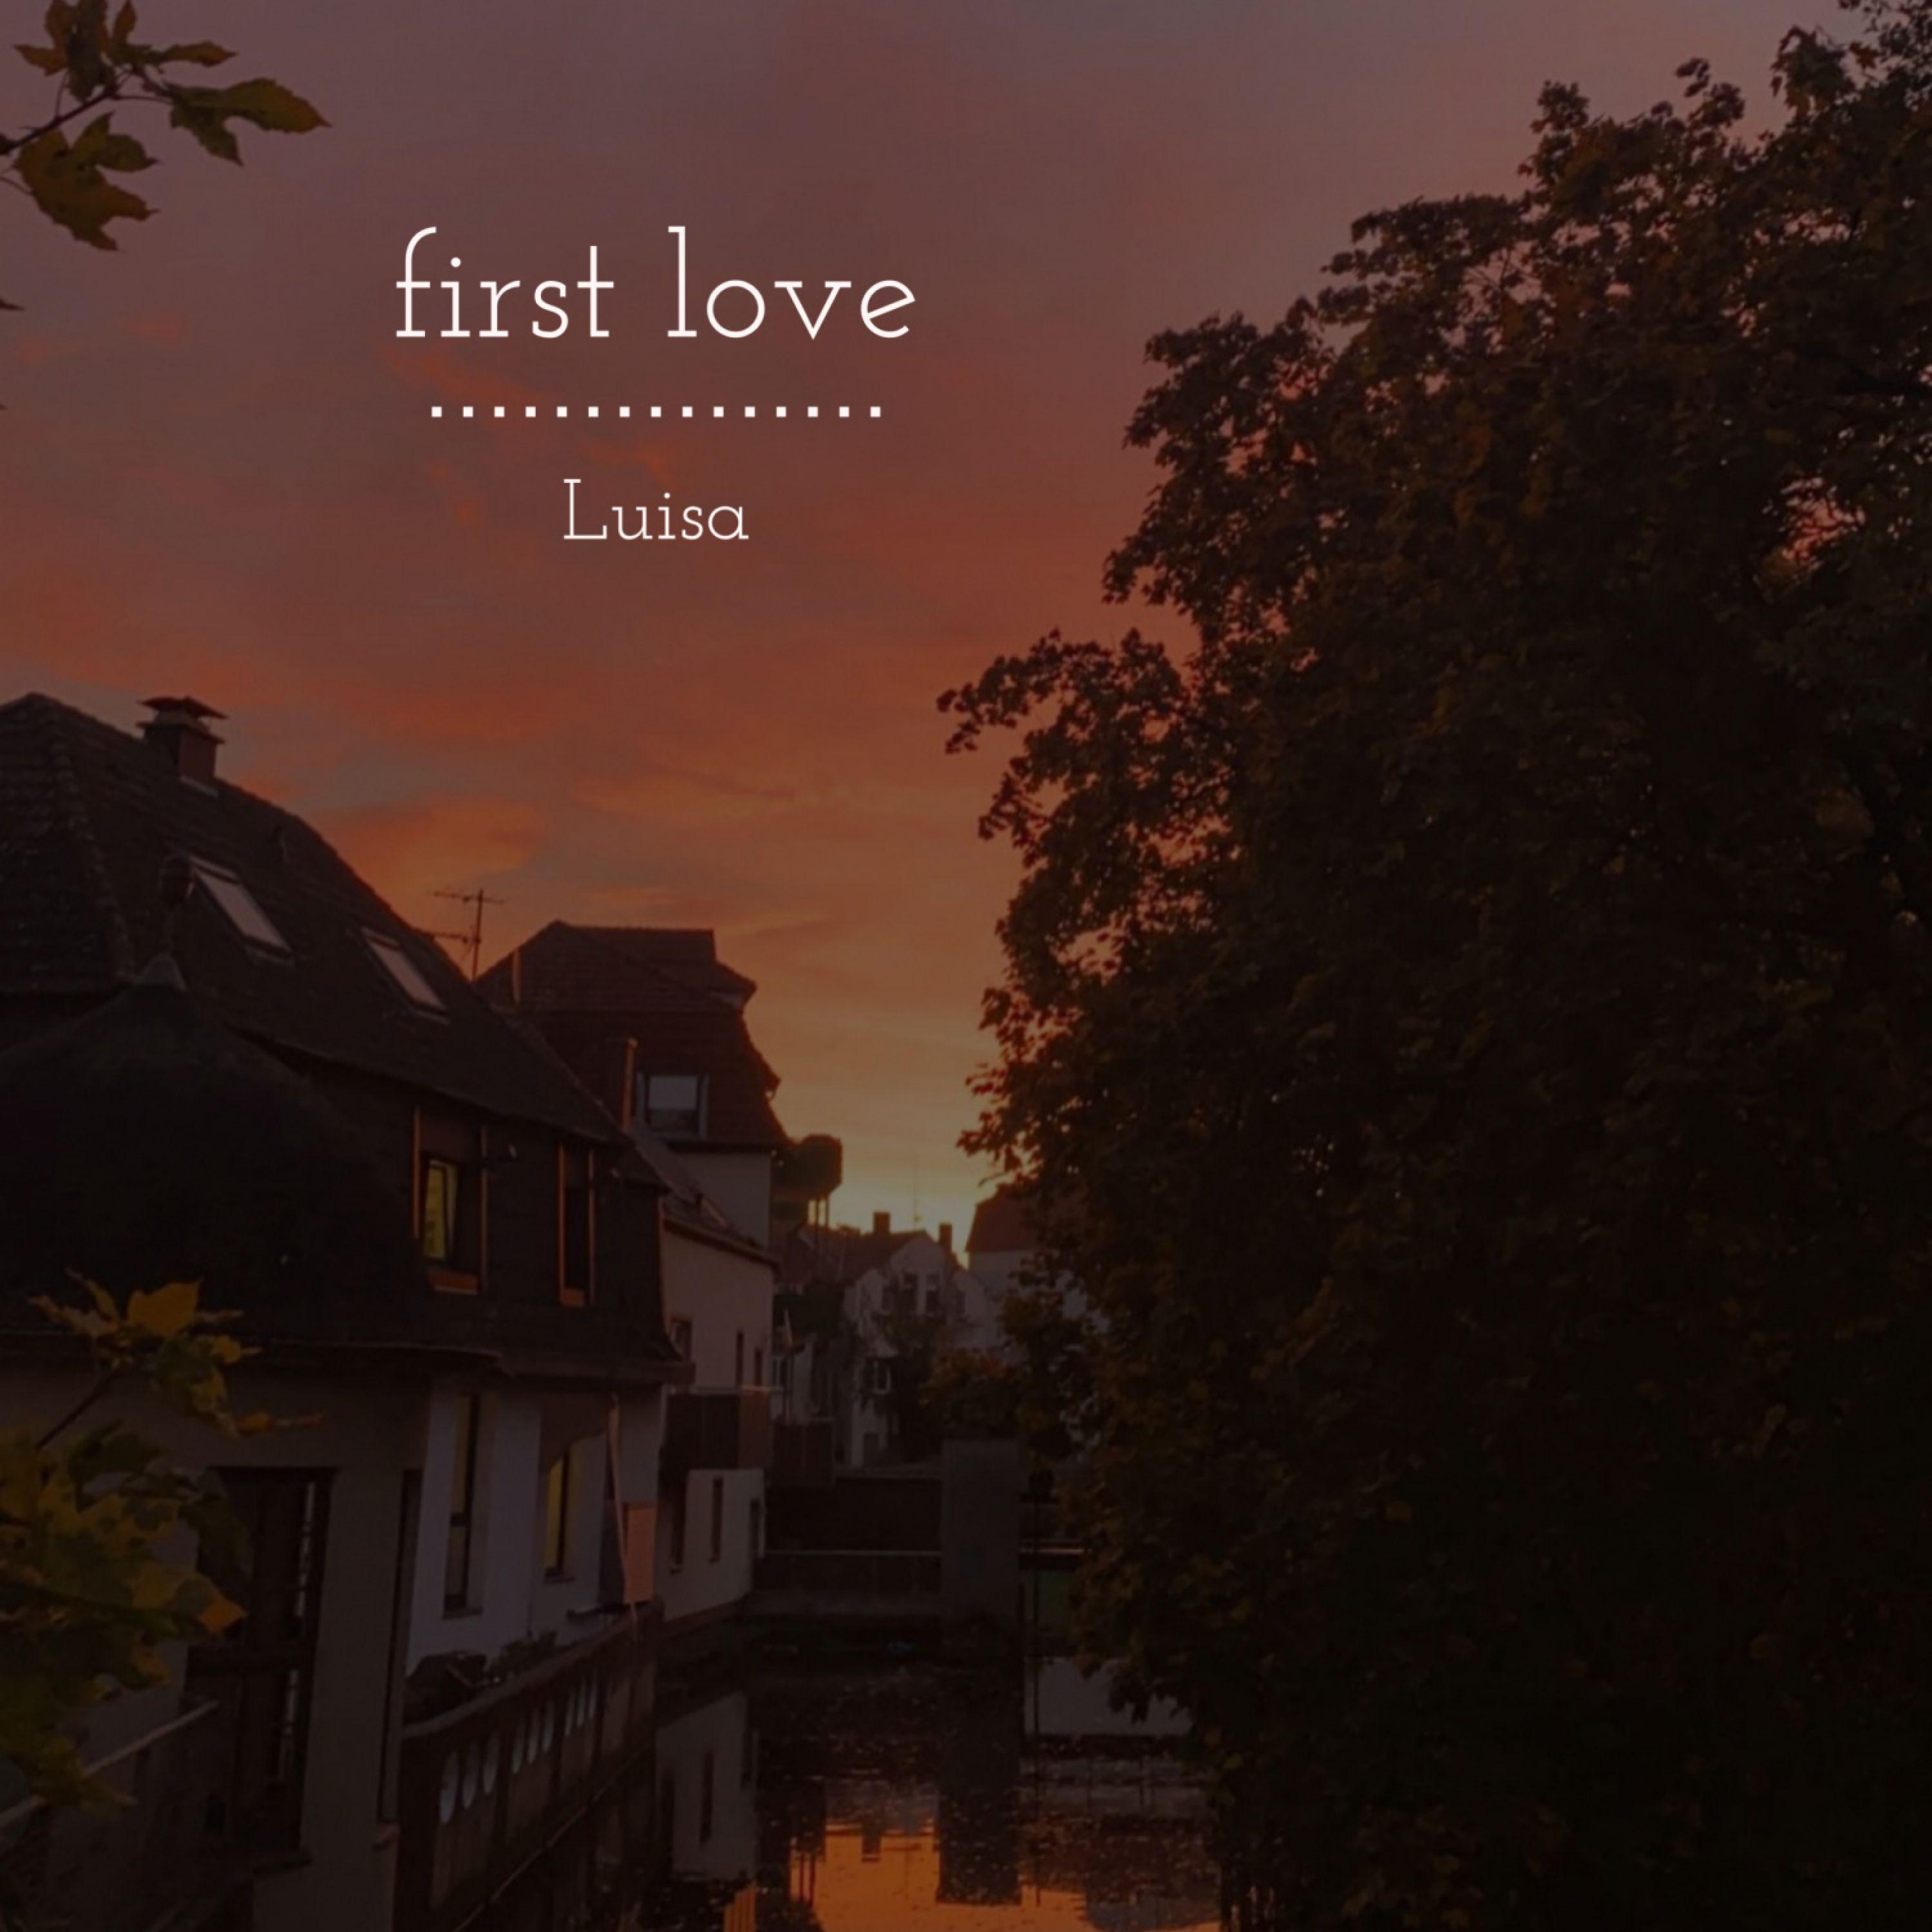 lùisa - First Love